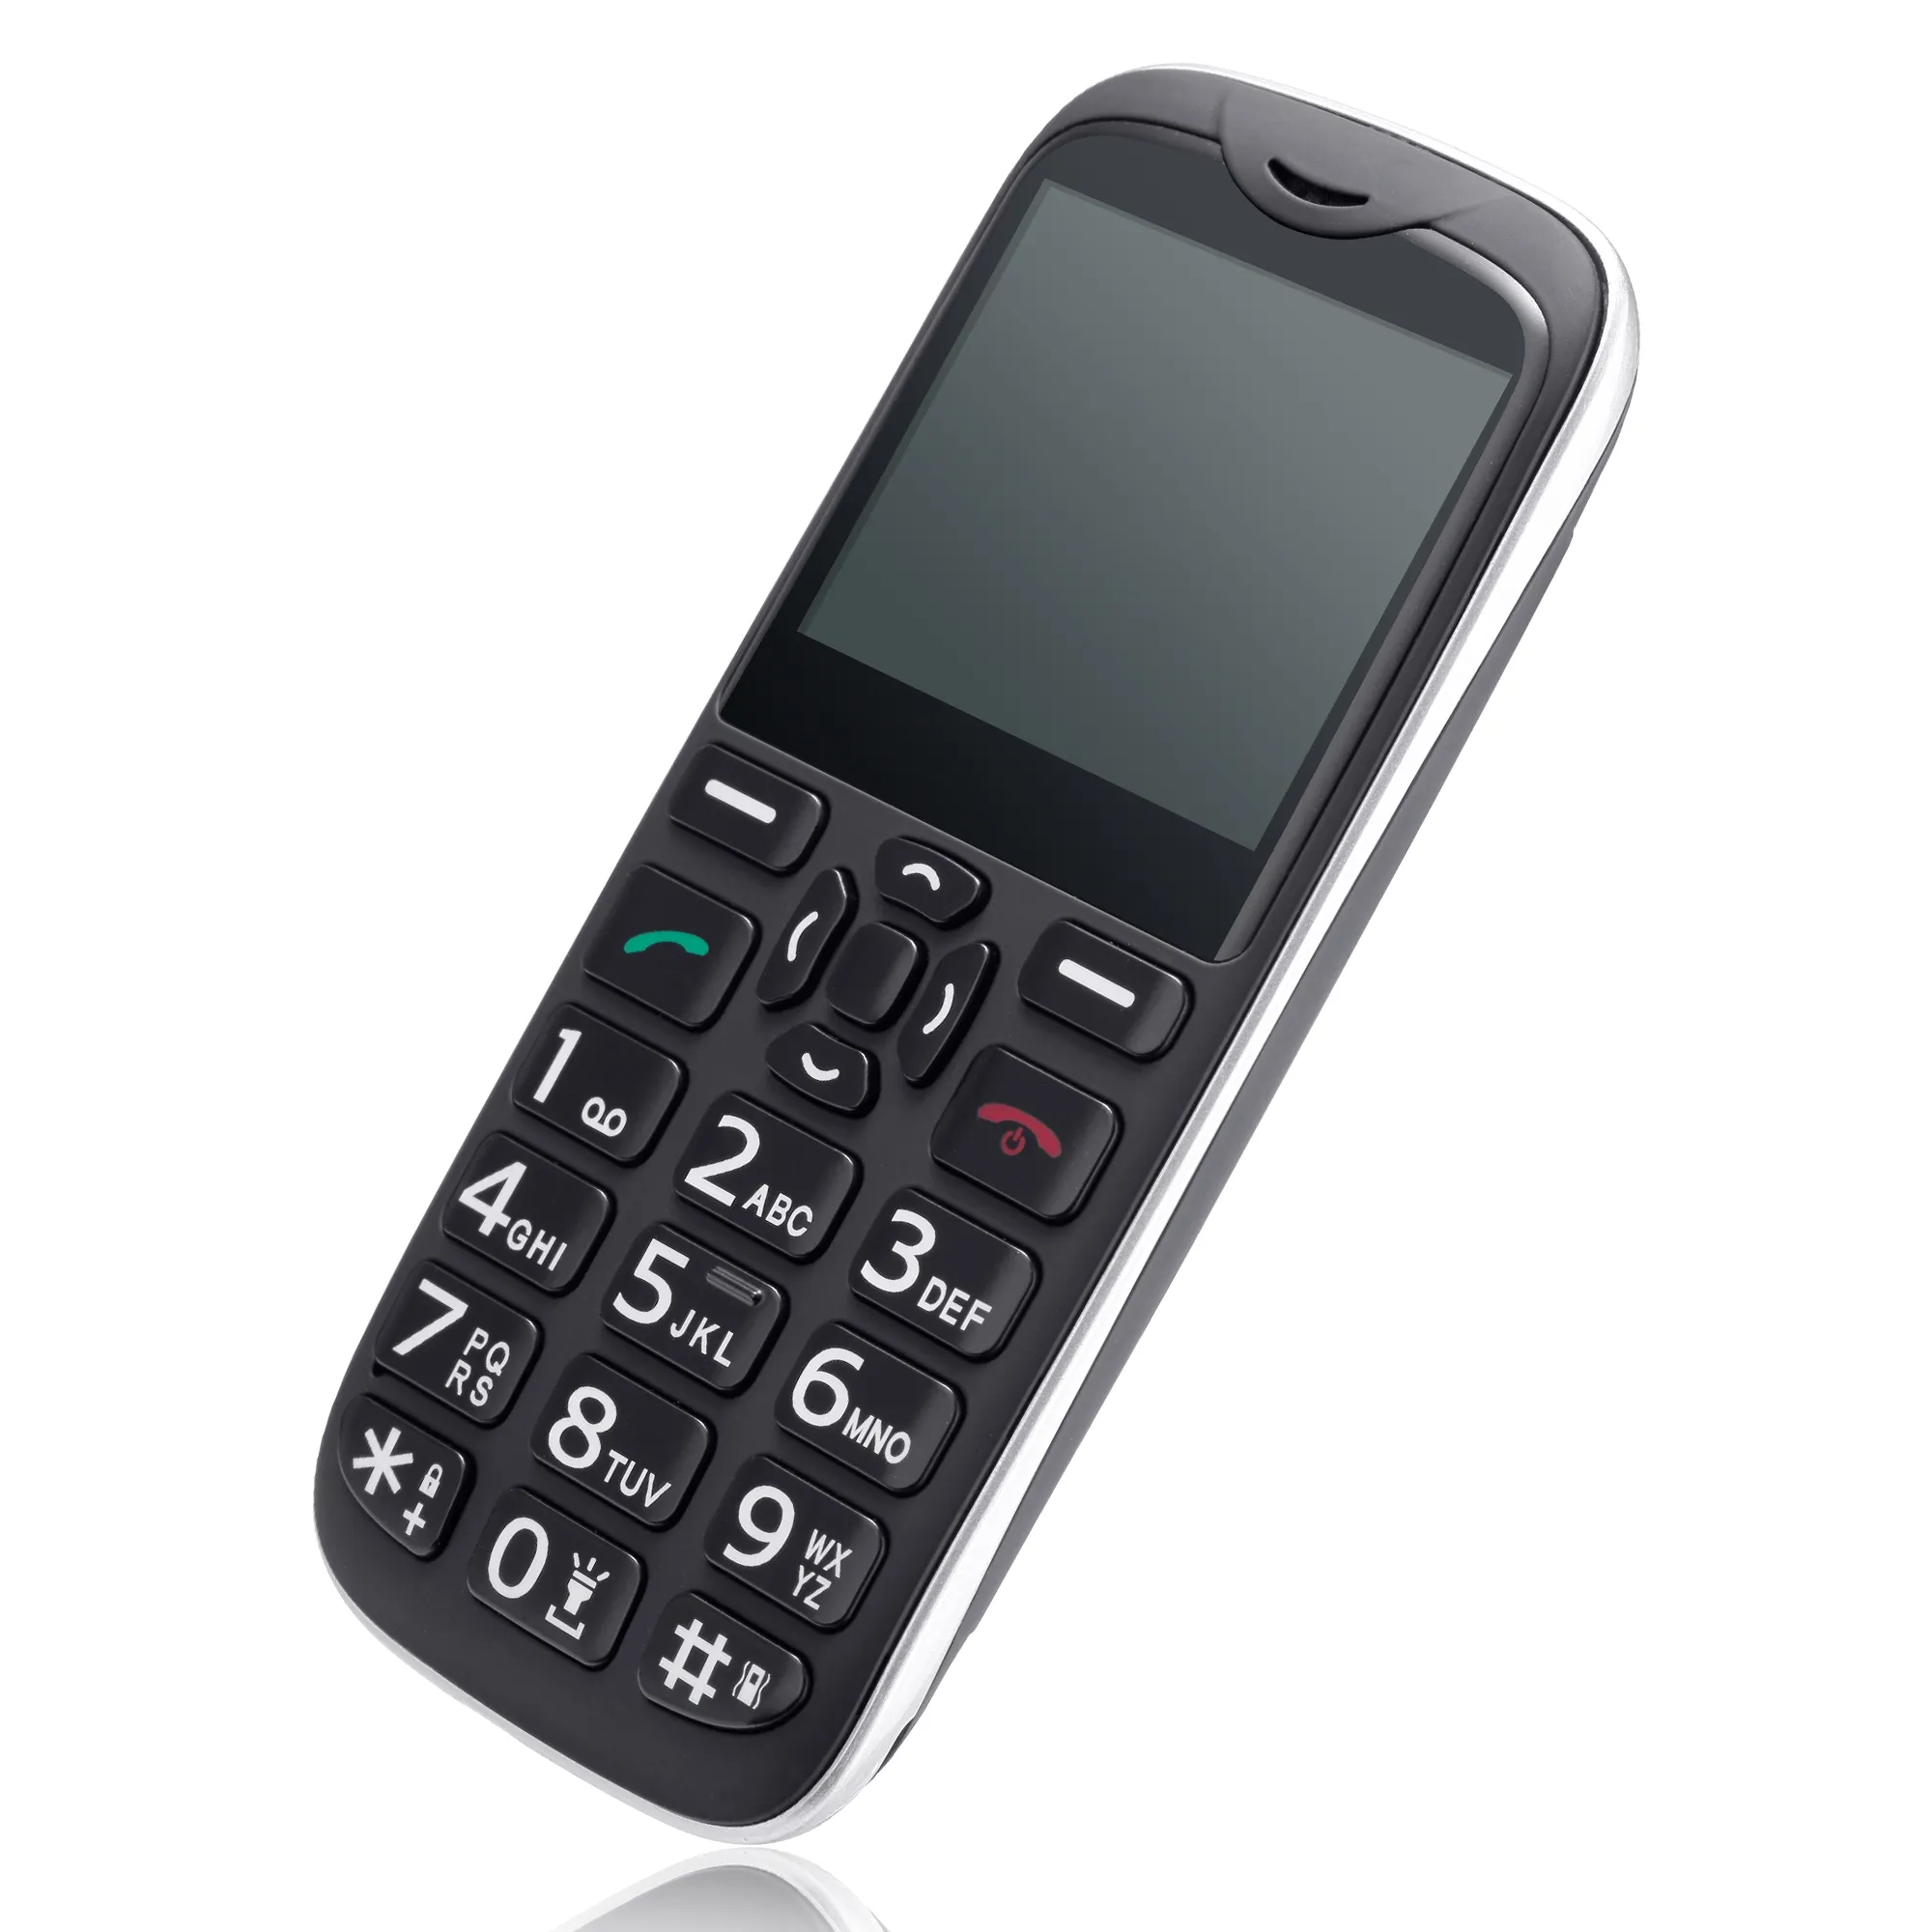 Son toptan orijinal özellik telefon 2.31 inç küçük temel Bar Unlocked cep telefon çift sim bar özellik telefon